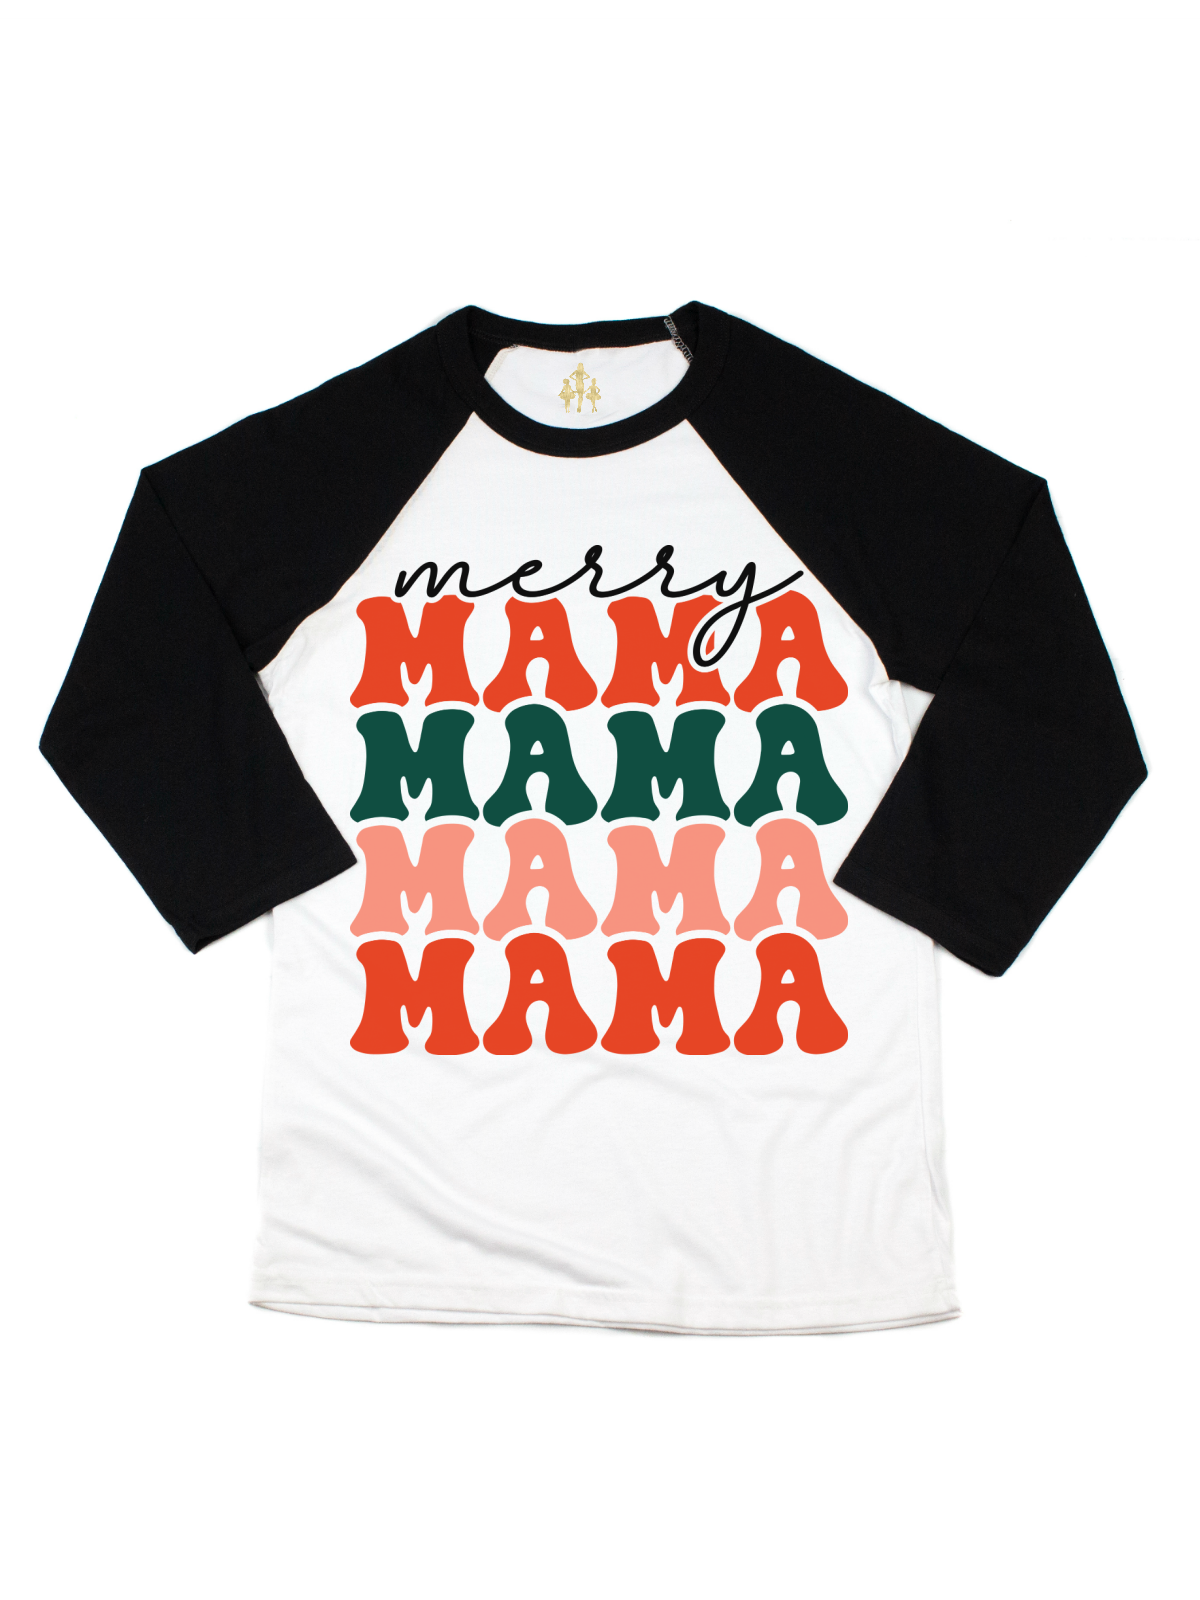 Merry Mama and Mini Matching Christmas Raglan Shirts